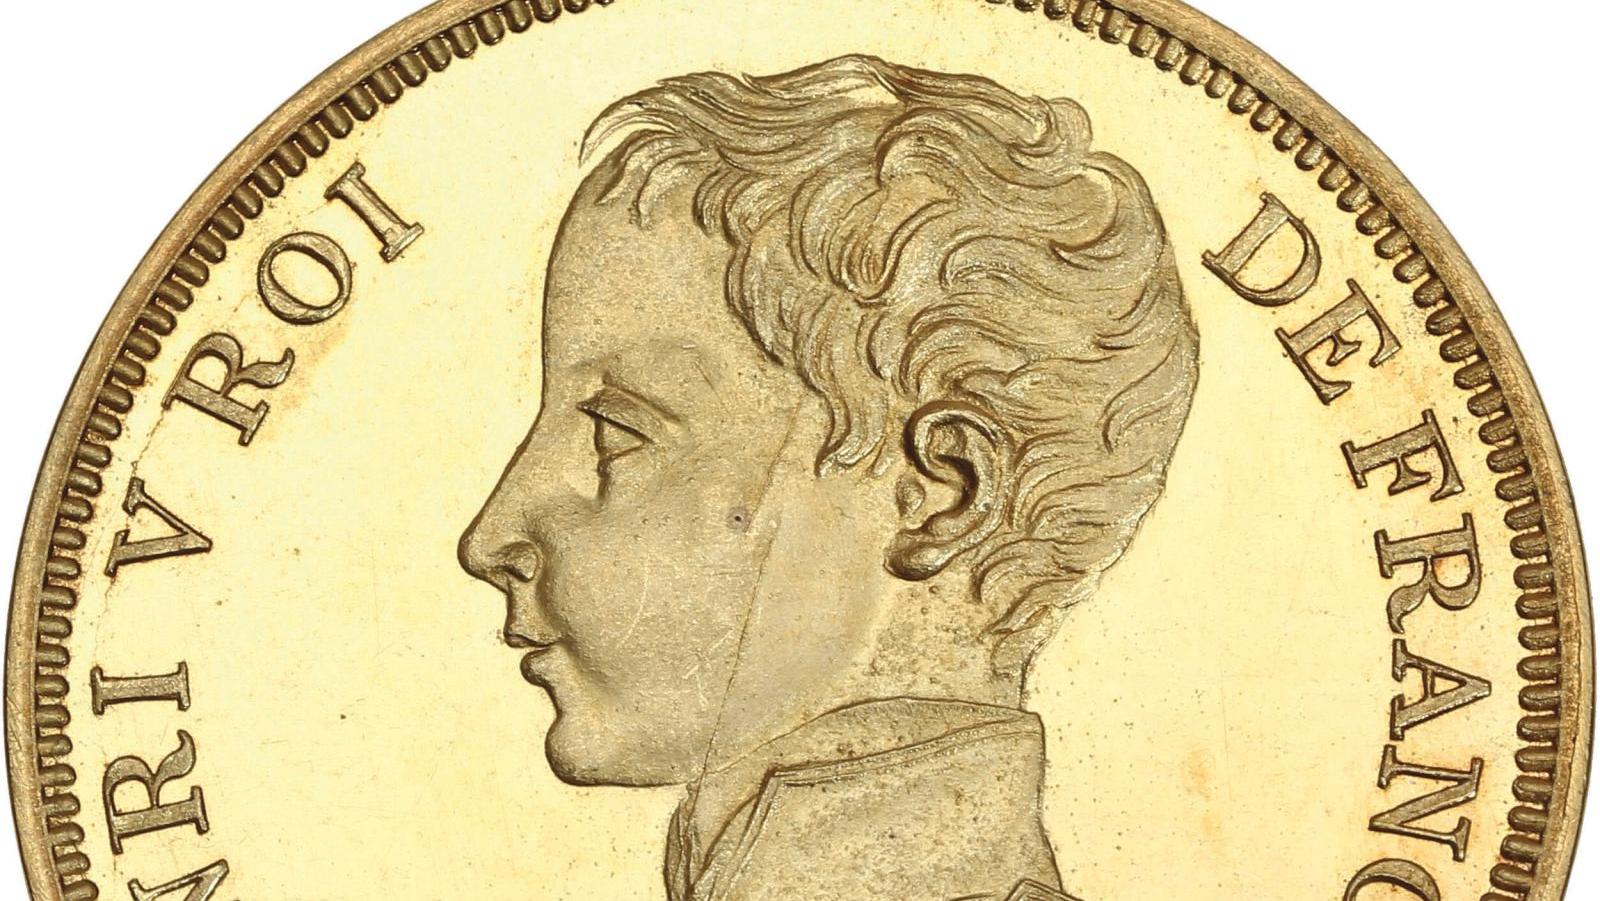 Henri V, prétendant (1820-1883), pièce de 5 francs en or, frappe de 1832, poids 47,30 g.... Le comte de Chambord, il aurait pu être roi